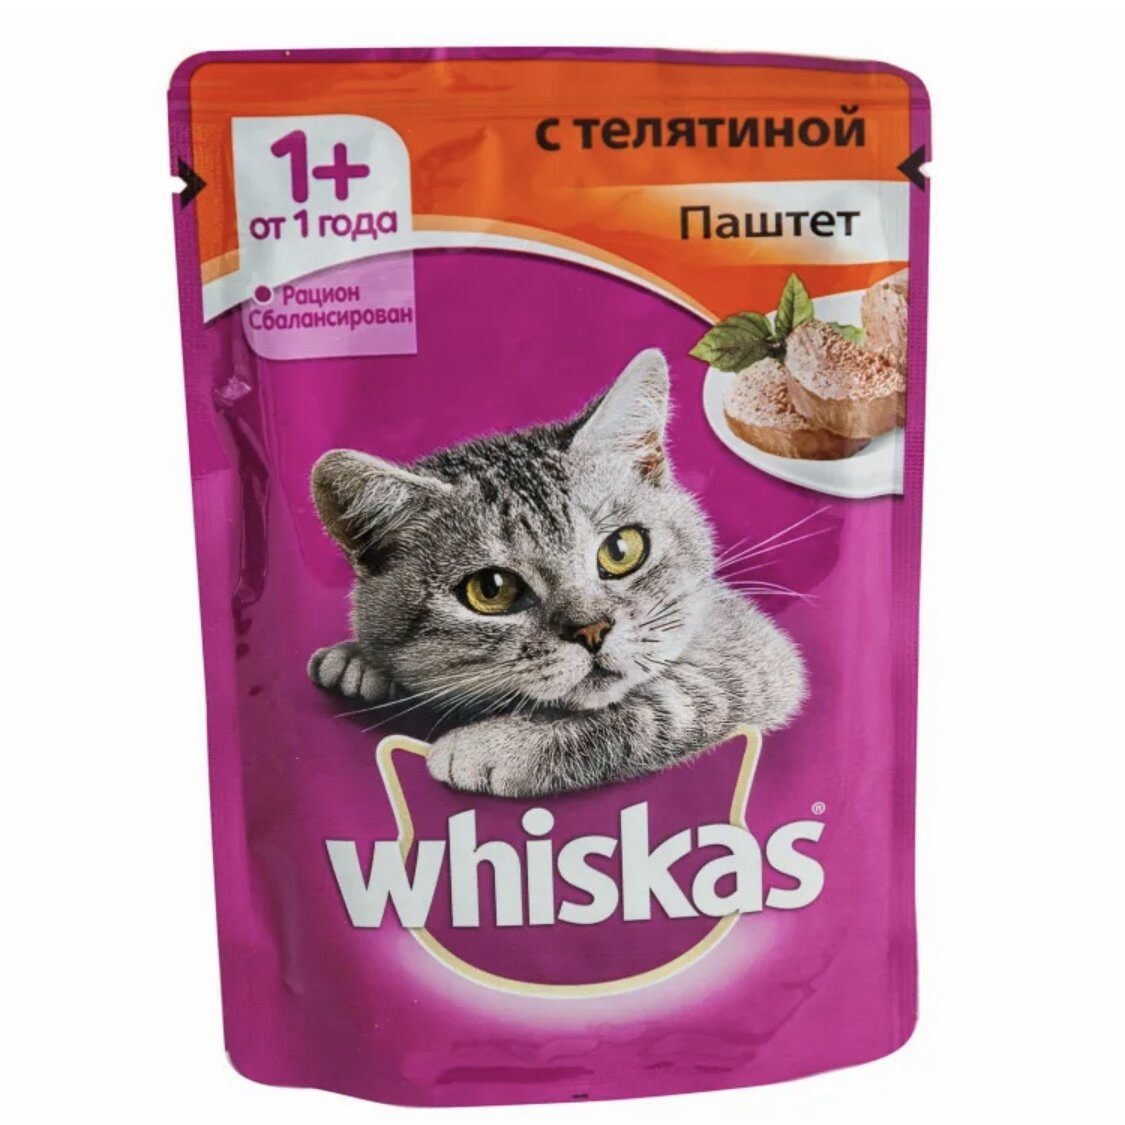  Реклама кошачьего корма Whiskas идёт уже достаточное количество времени. А симпатичный серый котик стал лицом (мордахой) данного продукта.